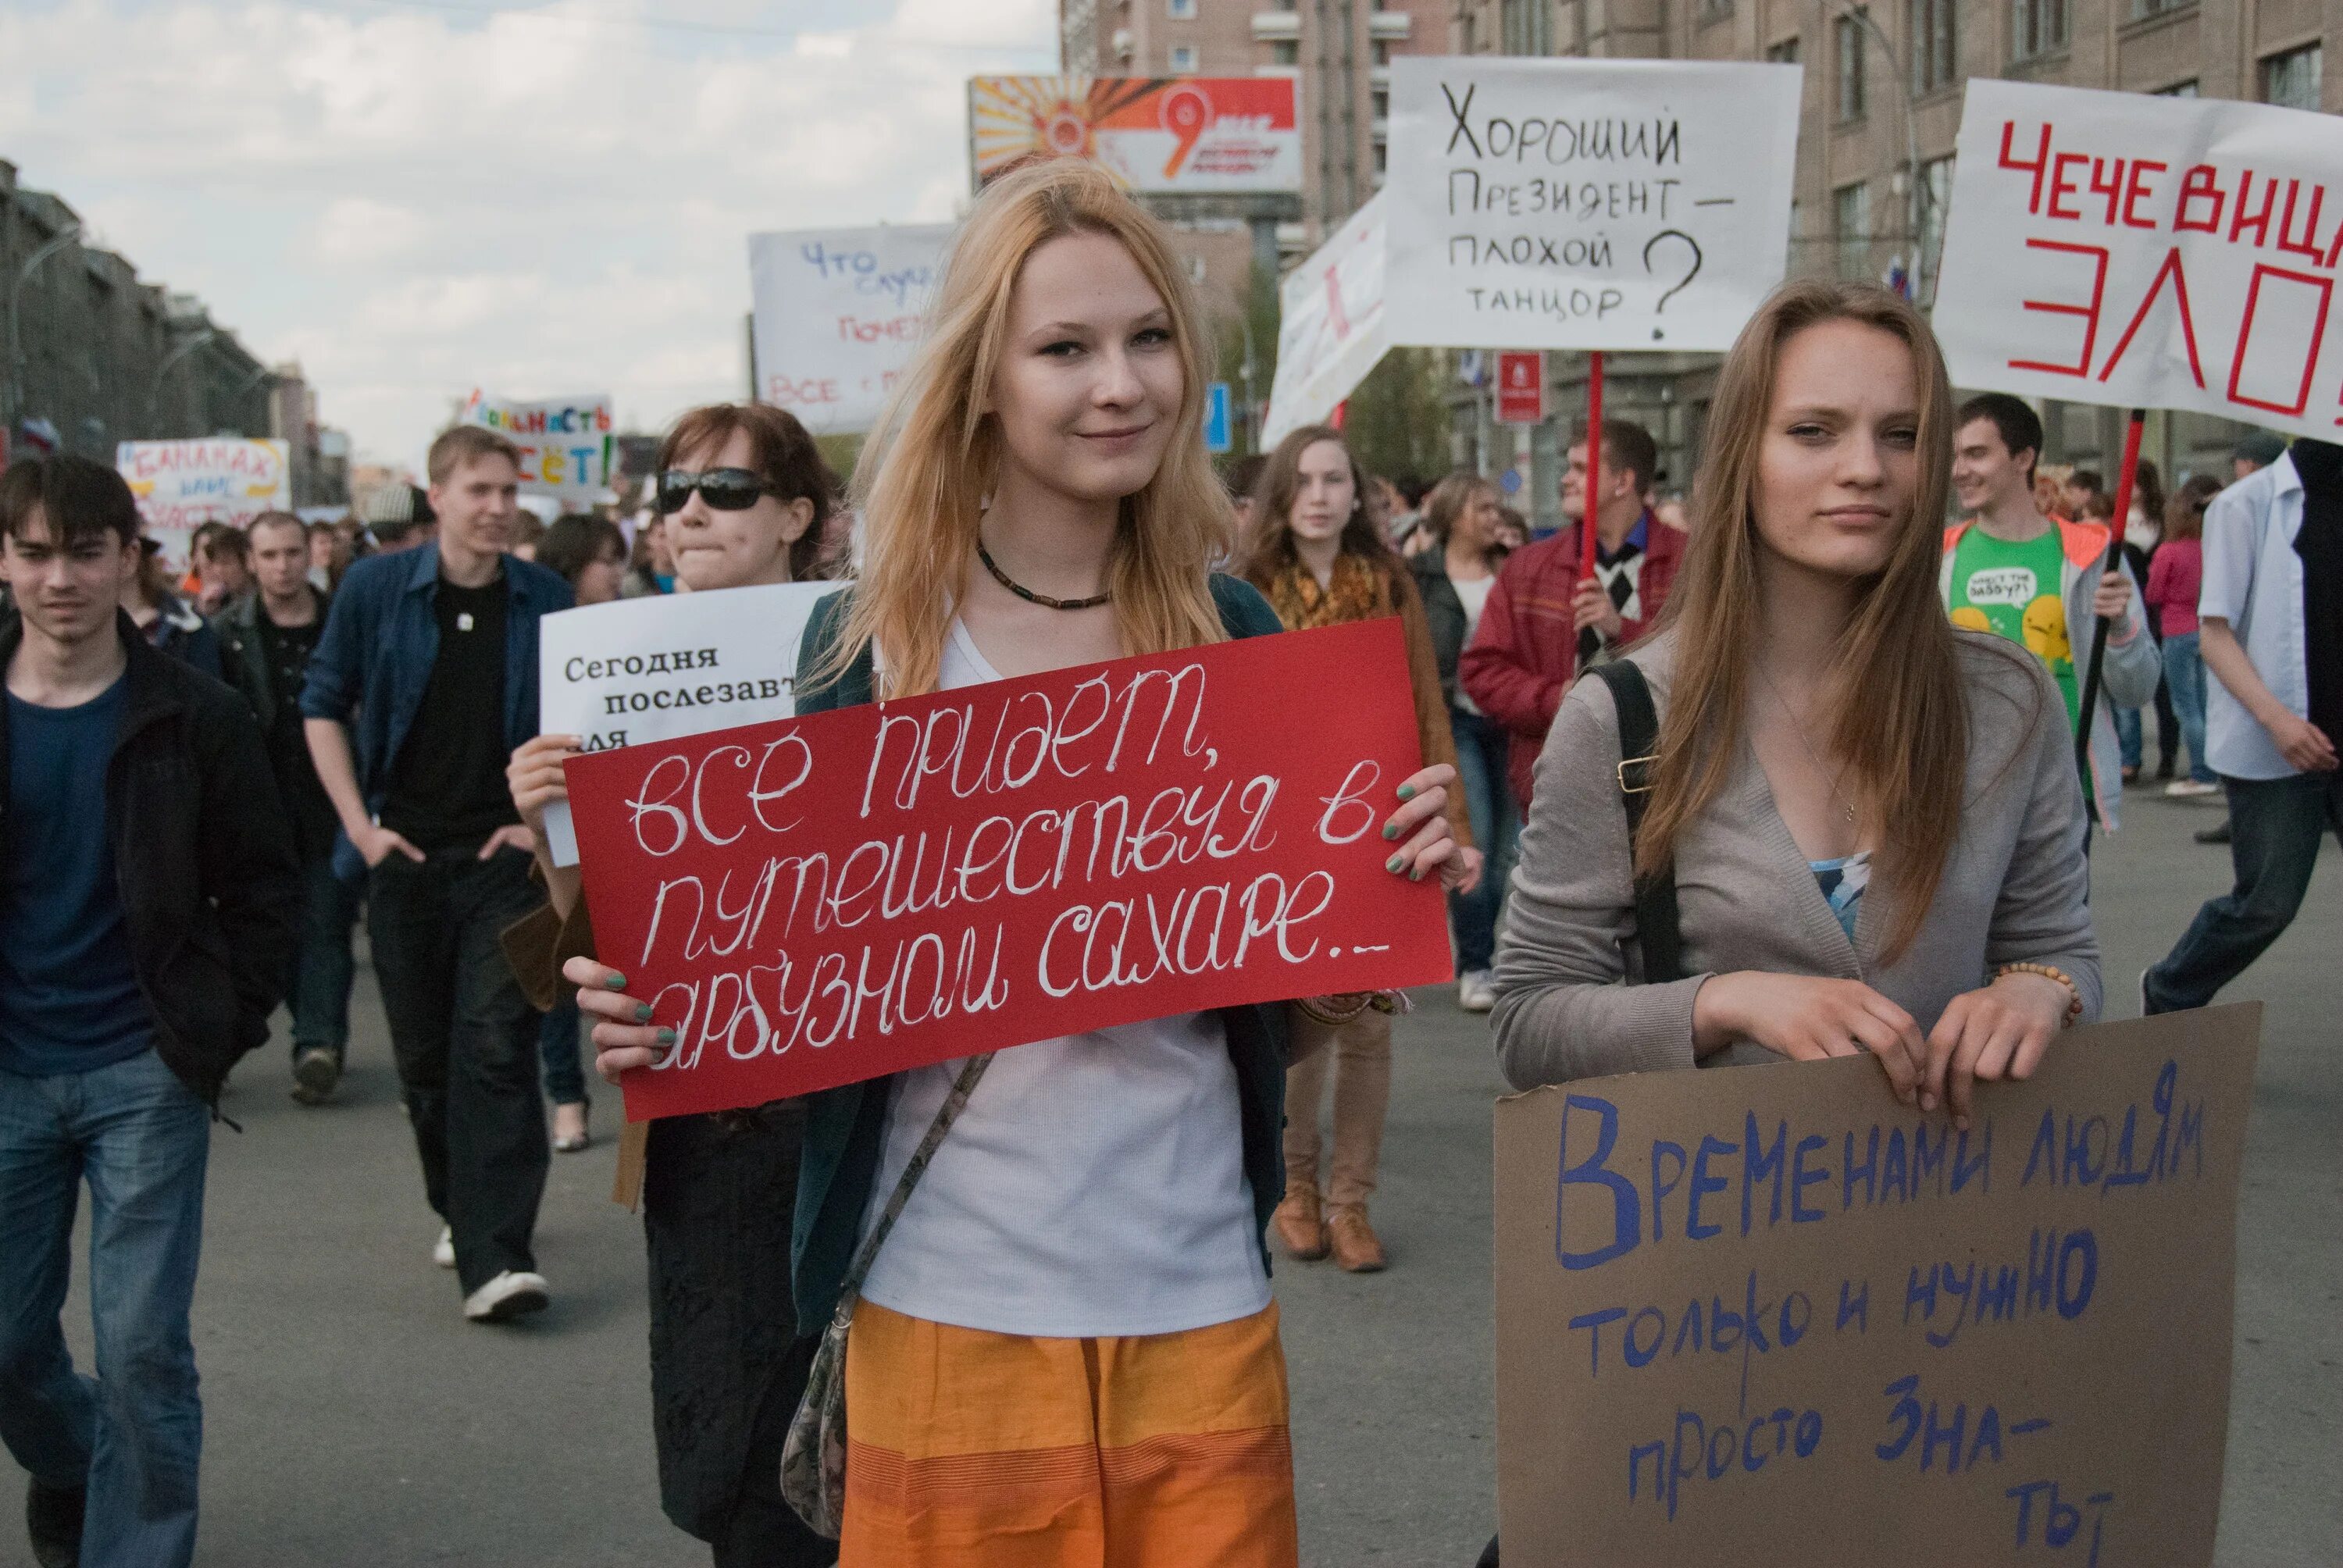 Монстрация в Новосибирске 1 мая 2011 года. Новосибирск Первомайская Монстрация. Лозунги Монстрации. Демонстрация с плакатами. 5 мая 2011